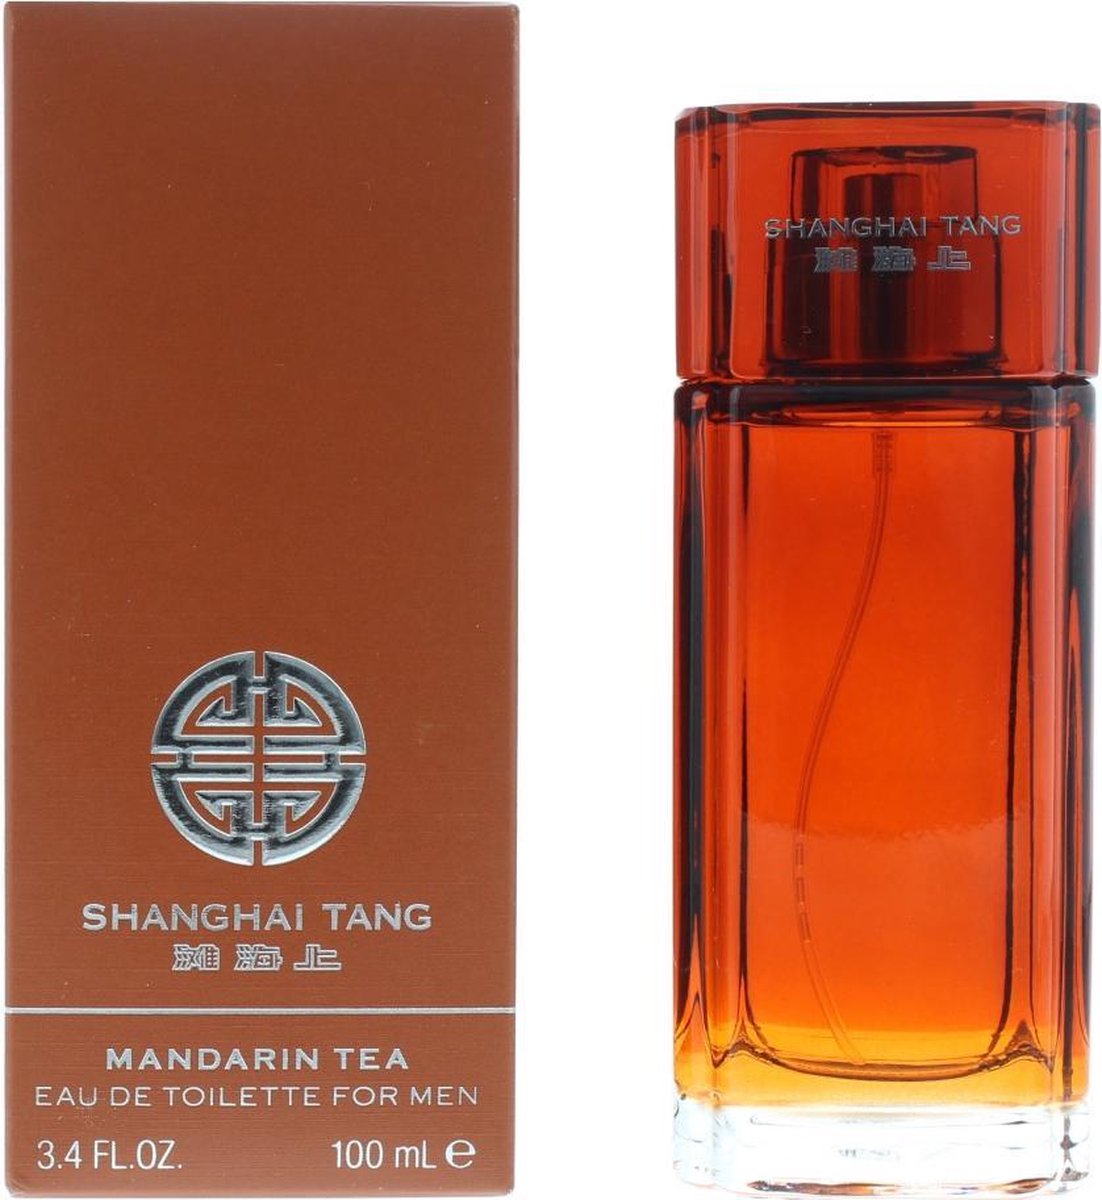 Thé Shanghai Tang St Mandarin - 100 ml - Eau de Toilette | bol.com